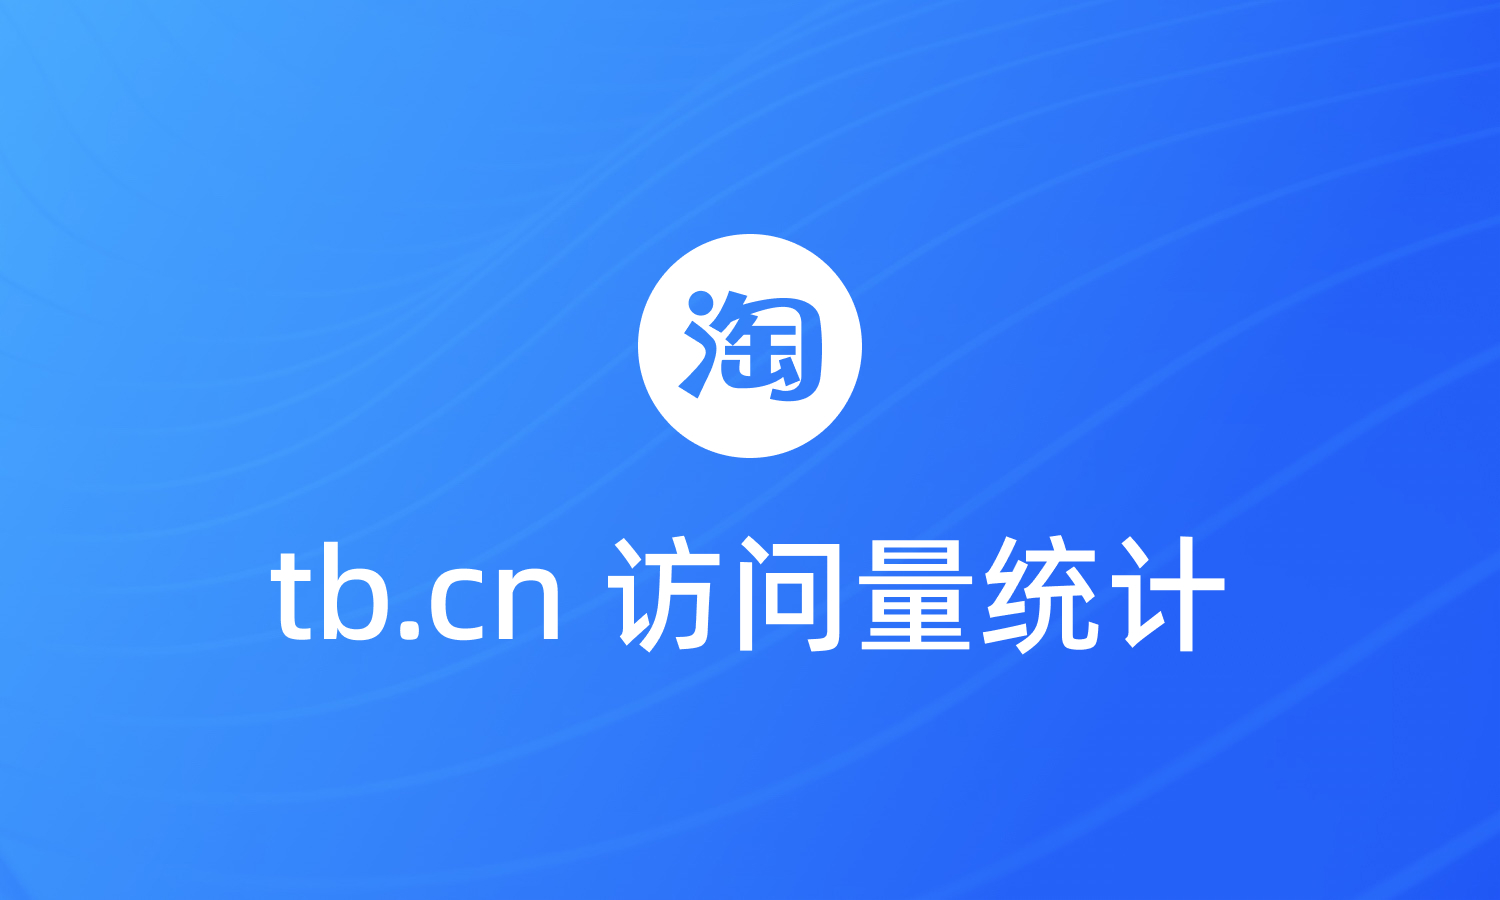 统计淘宝短链接tb.cn的渠道访问量